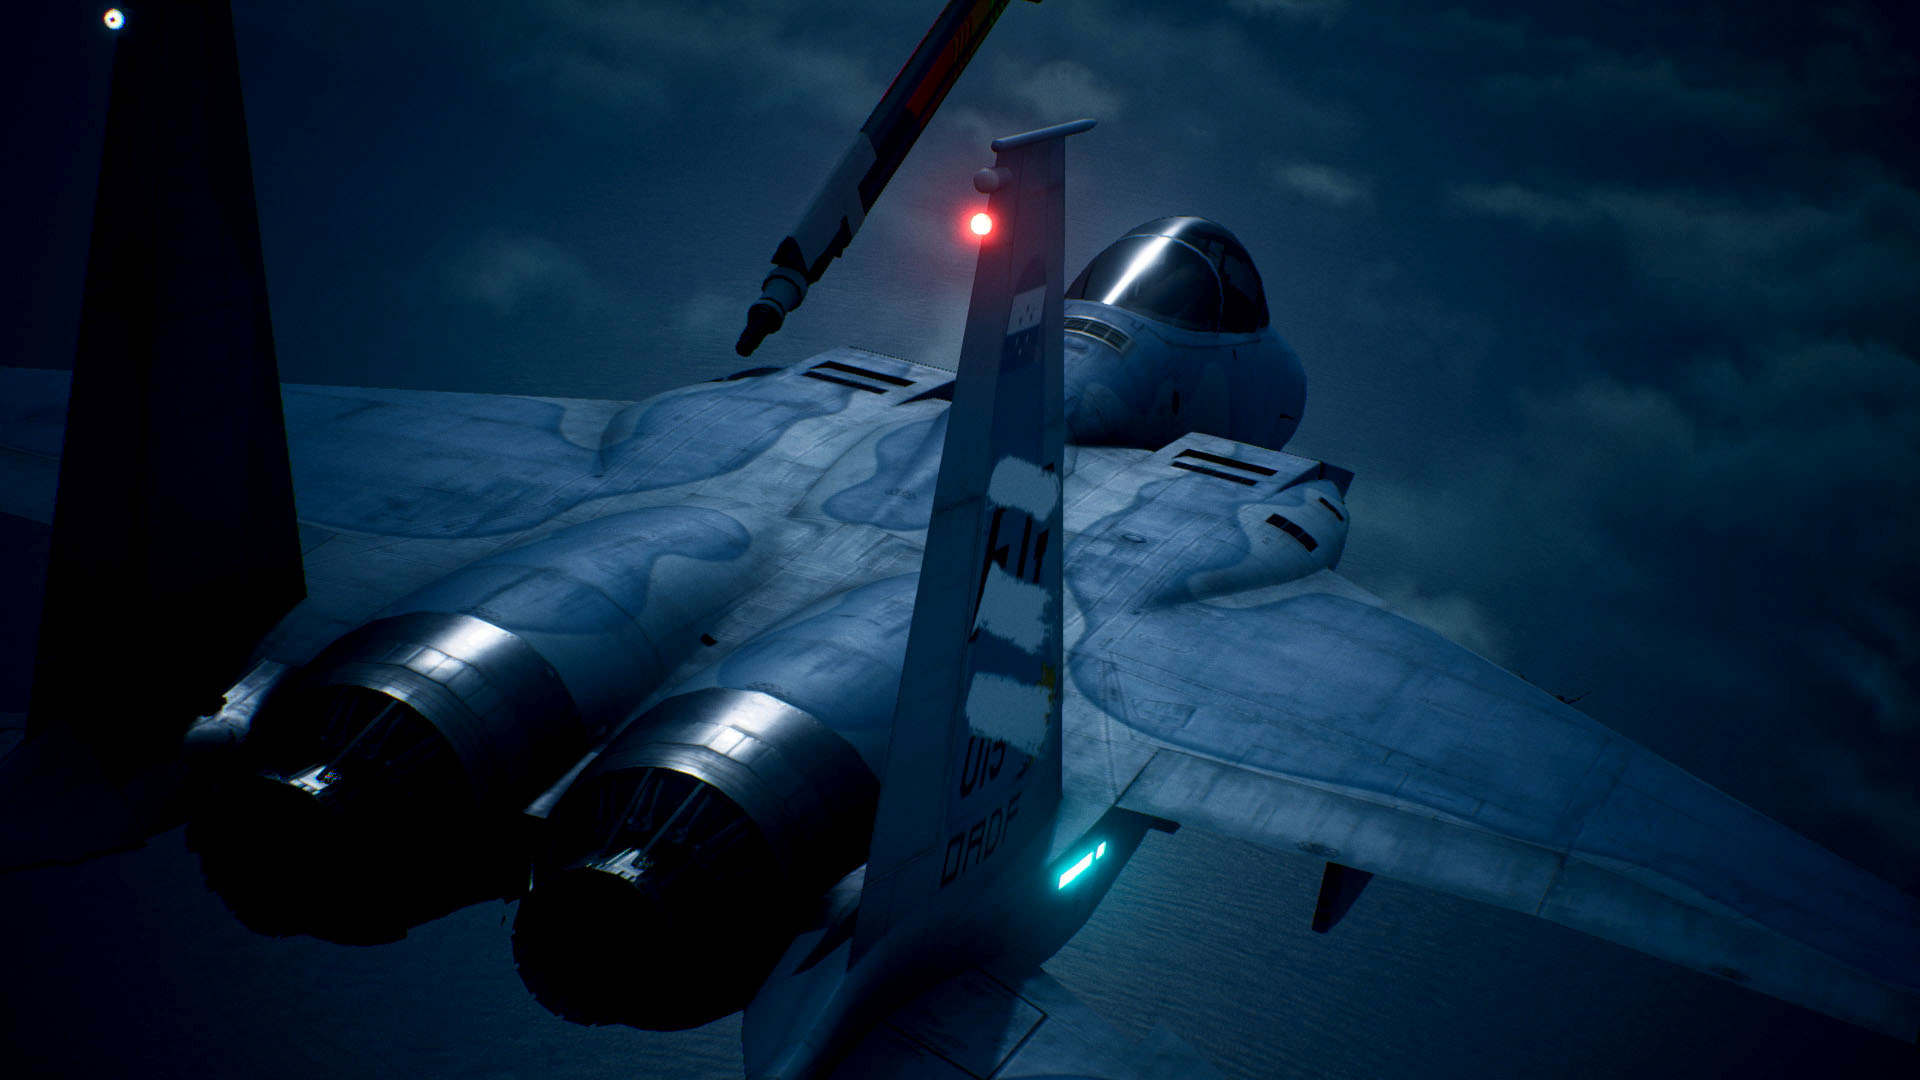 سی دی کی اریجینال استیم بازی Ace Combat 7: Skies Unknown